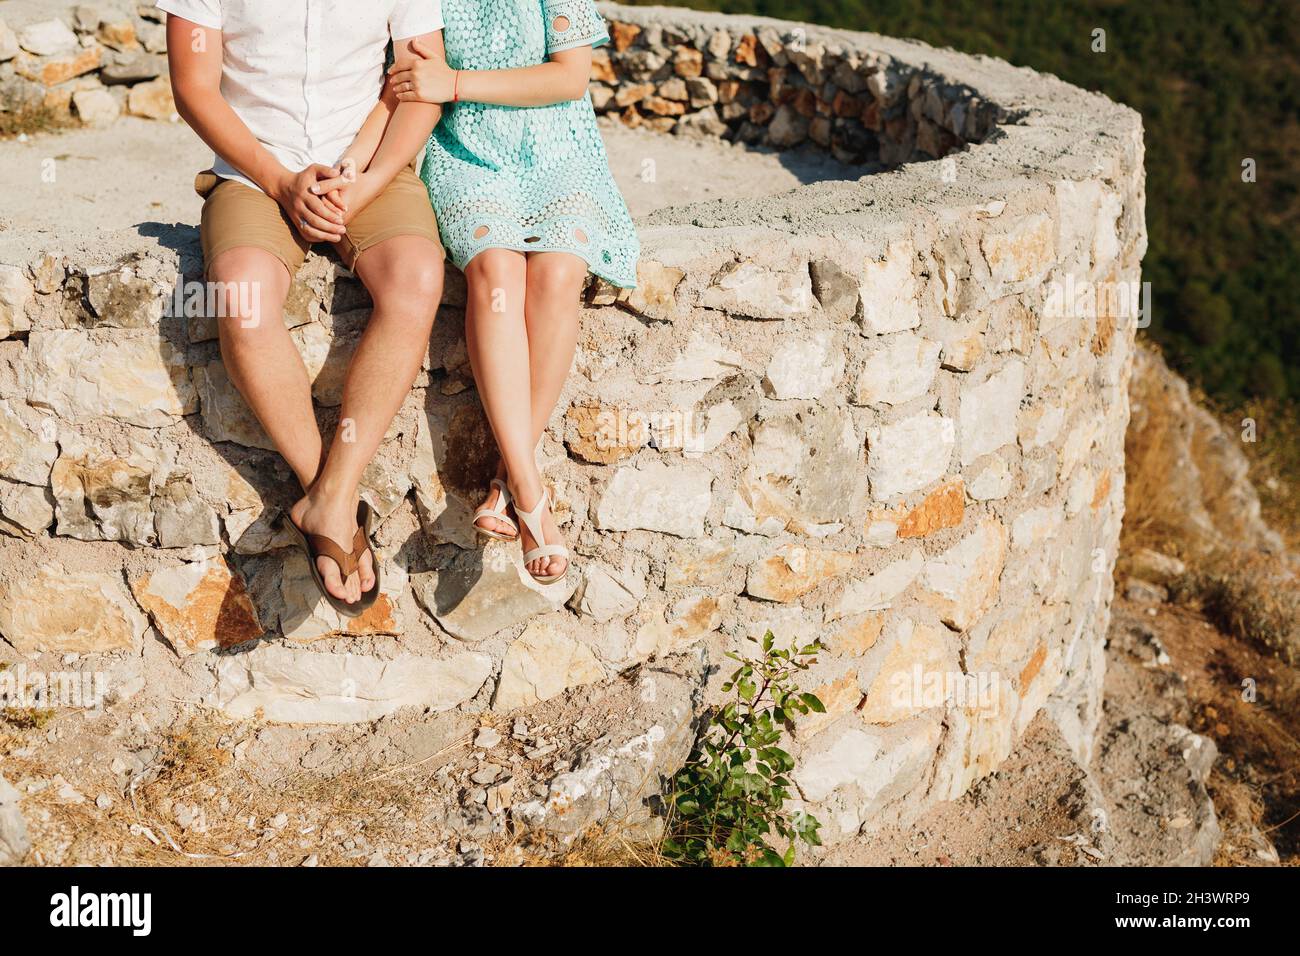 Un homme et une femme sont assis côte à côte sur le bord d'une plate-forme en pierre Banque D'Images